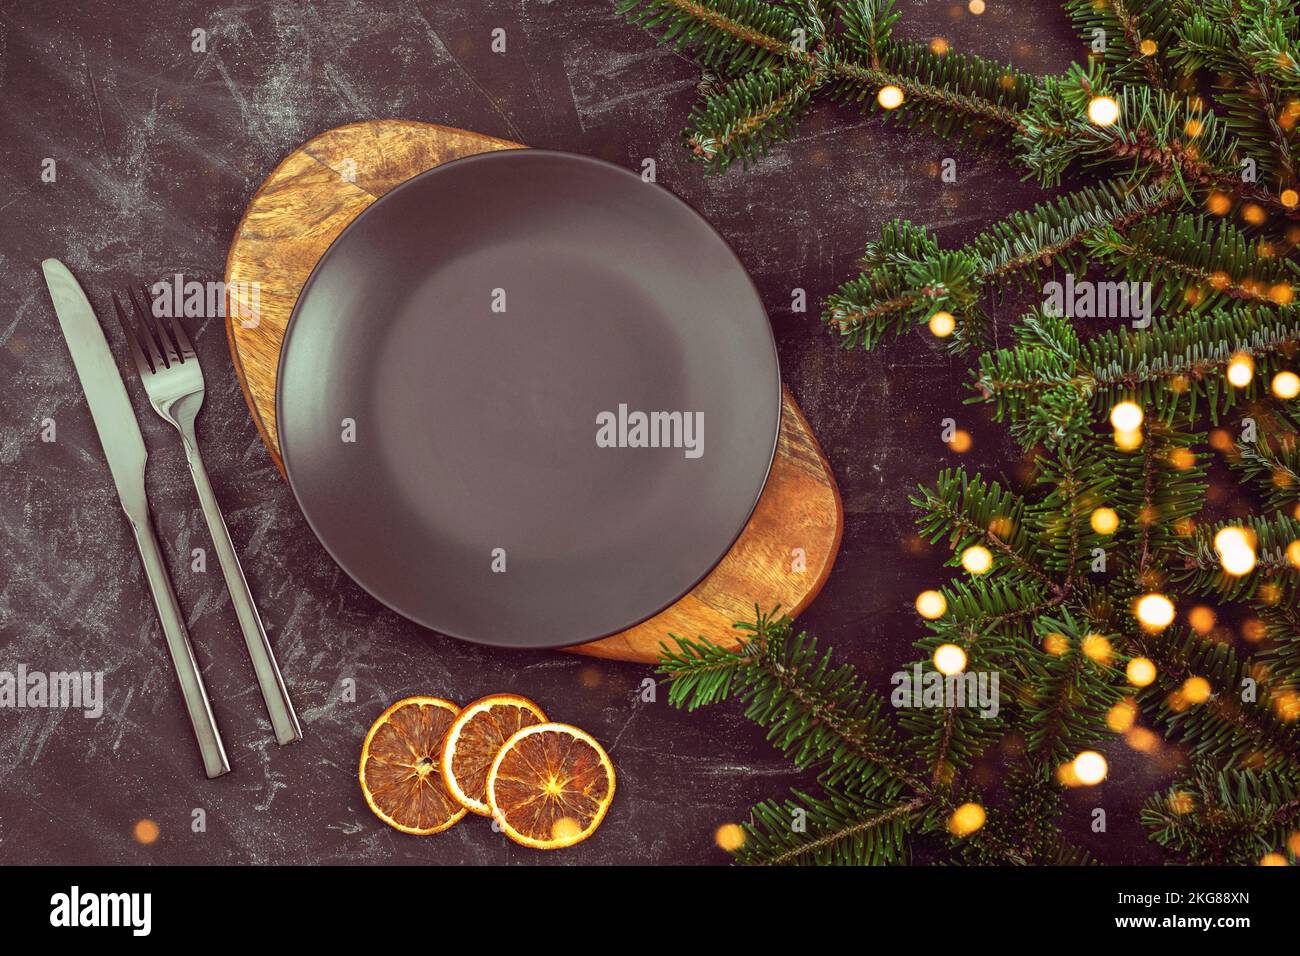 Tavola nera con piatto su tagliere, forchetta e coltello, rami di abete natalizio e fette d'arancia. Vista dall'alto, disposizione piatta Foto Stock